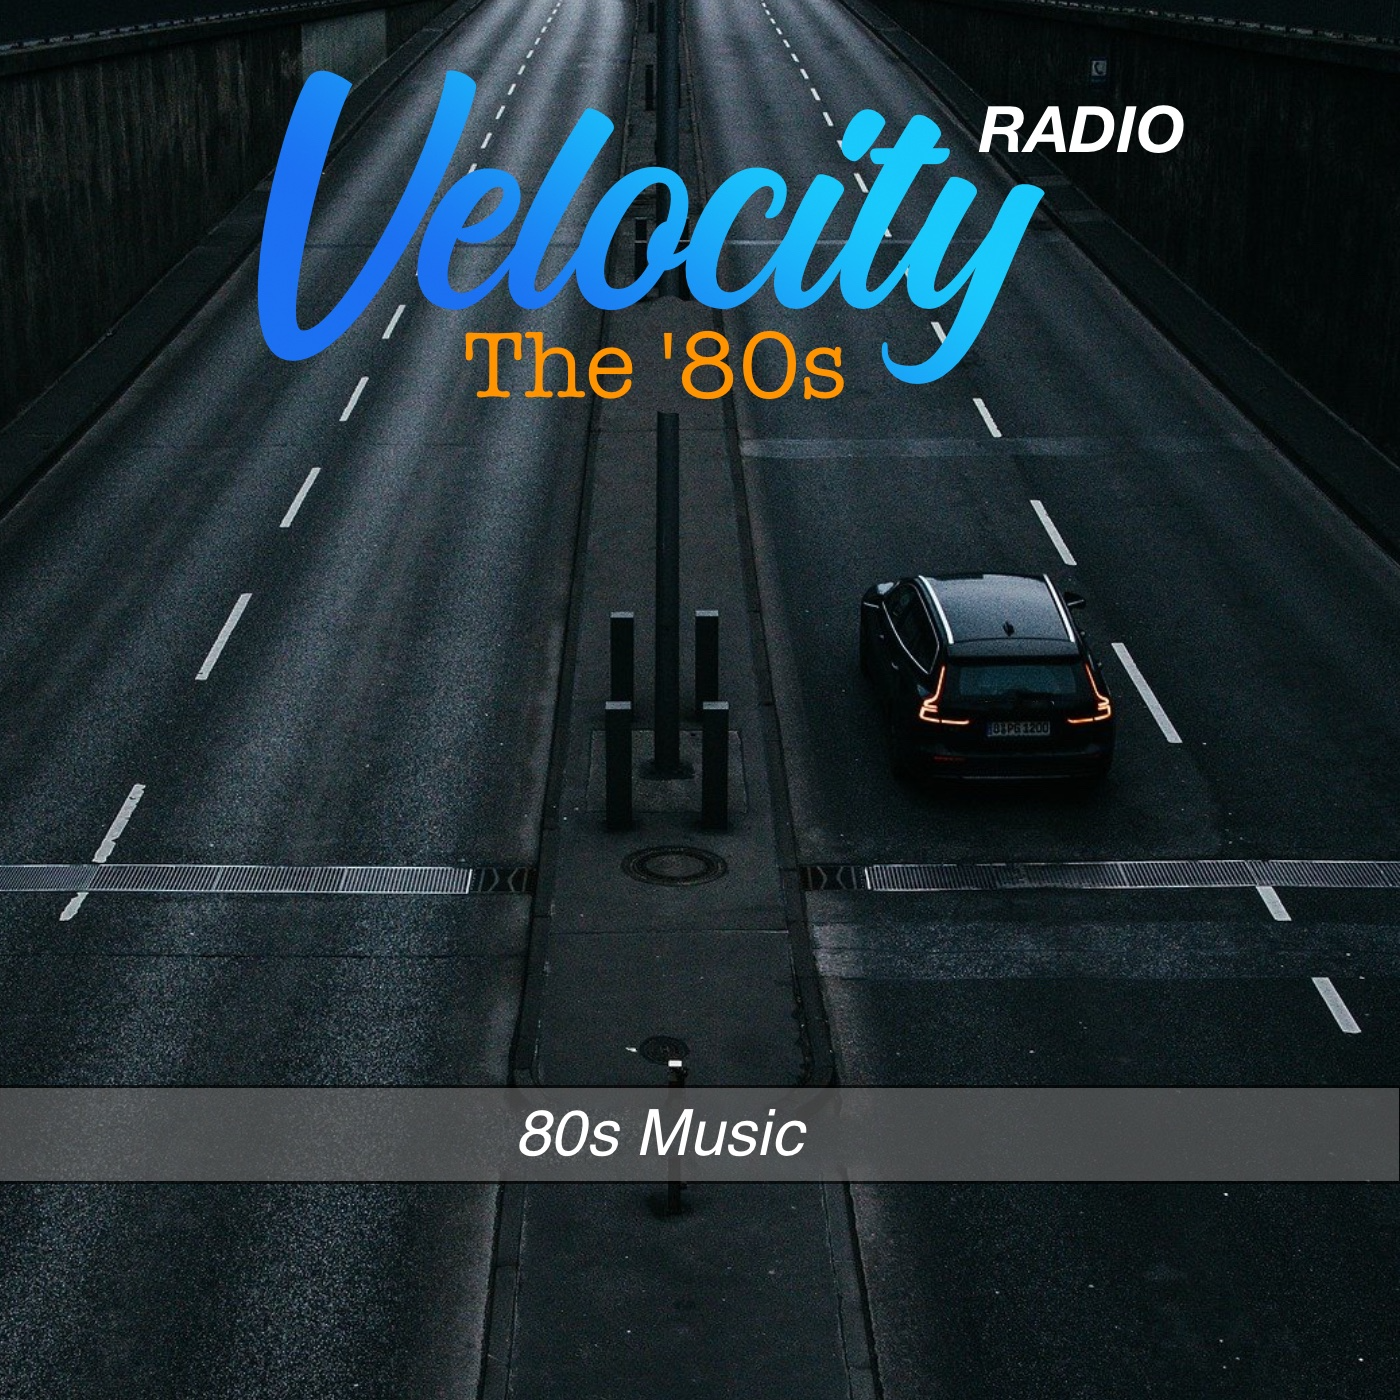 Velocity Radio - The '80s